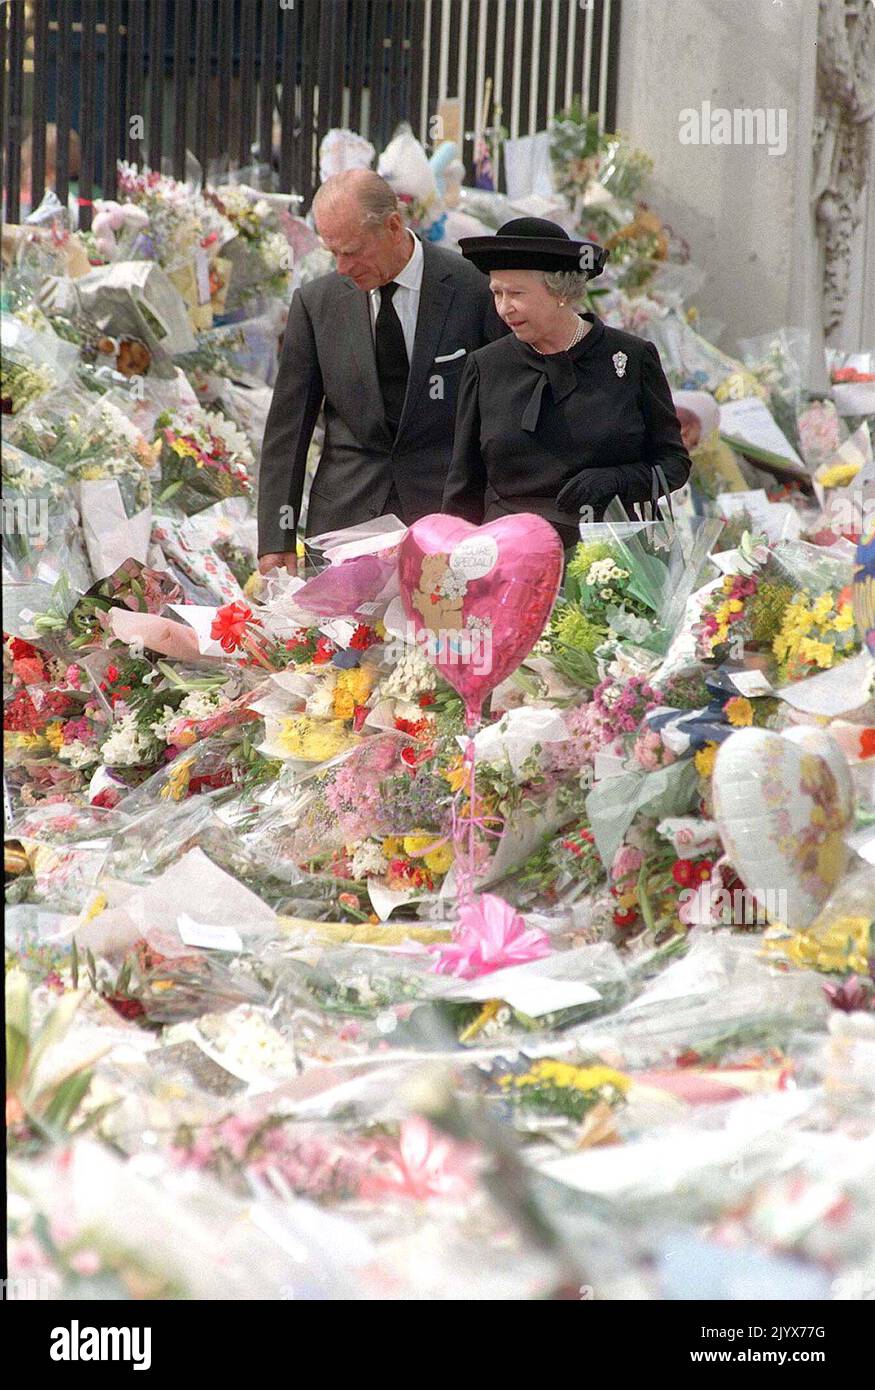 Foto del archivo de fecha 05/09/97 de la Reina y el Duque de Edimburgo viendo los homenajes florales a Diana, Princesa de Gales, en el Palacio de Buckingham. La reina murió pacíficamente en Balmoral esta tarde, ha anunciado el Palacio de Buckingham. Fecha de emisión: Jueves 8 de septiembre de 2022. Foto de stock